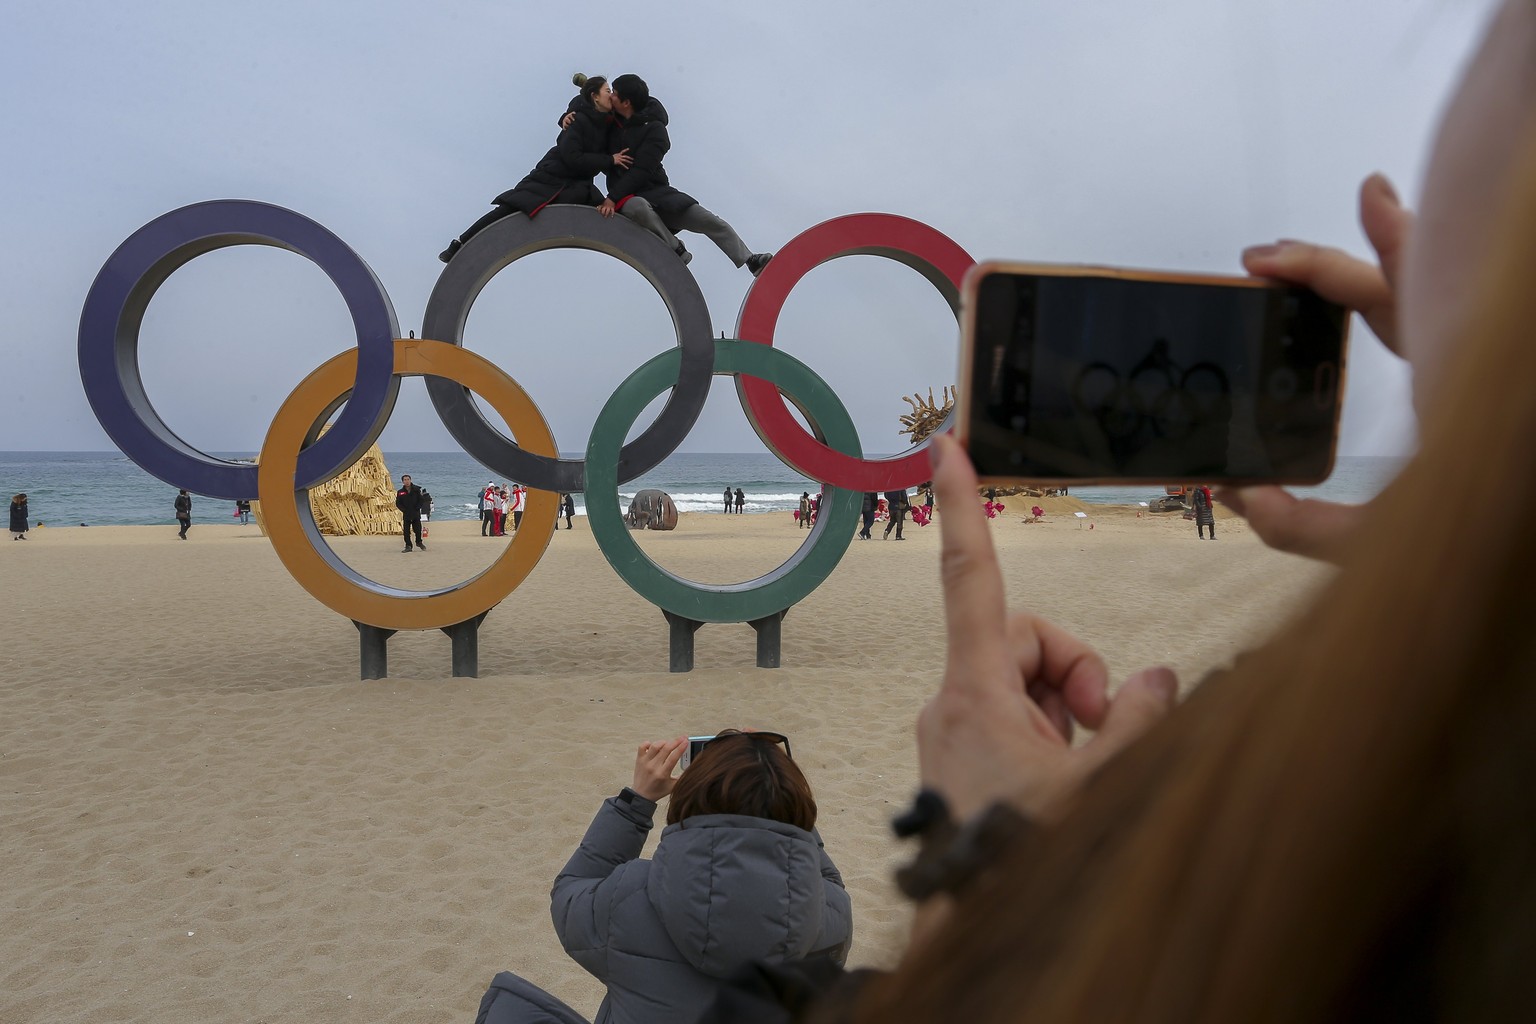 Beliebtes Foto-Sujet bei den Koreanern: Die olympischen Ringe am Strand von Gangneung.